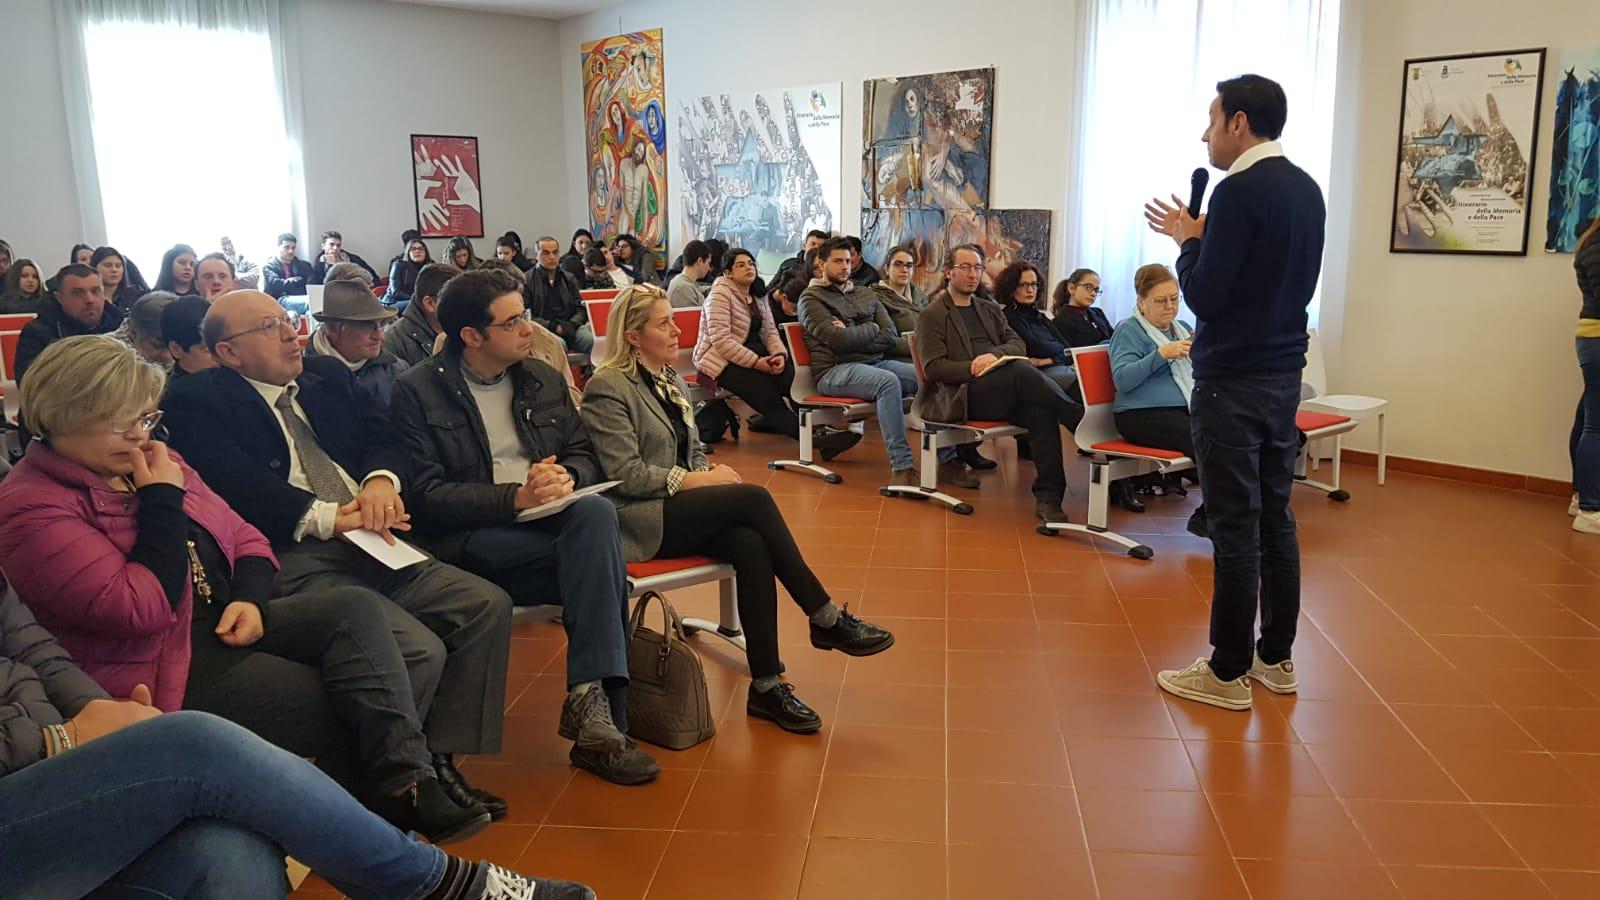 Roberto Giordano durante la presentazione del libro presso il Museo Palatucci in Capagna (SA)